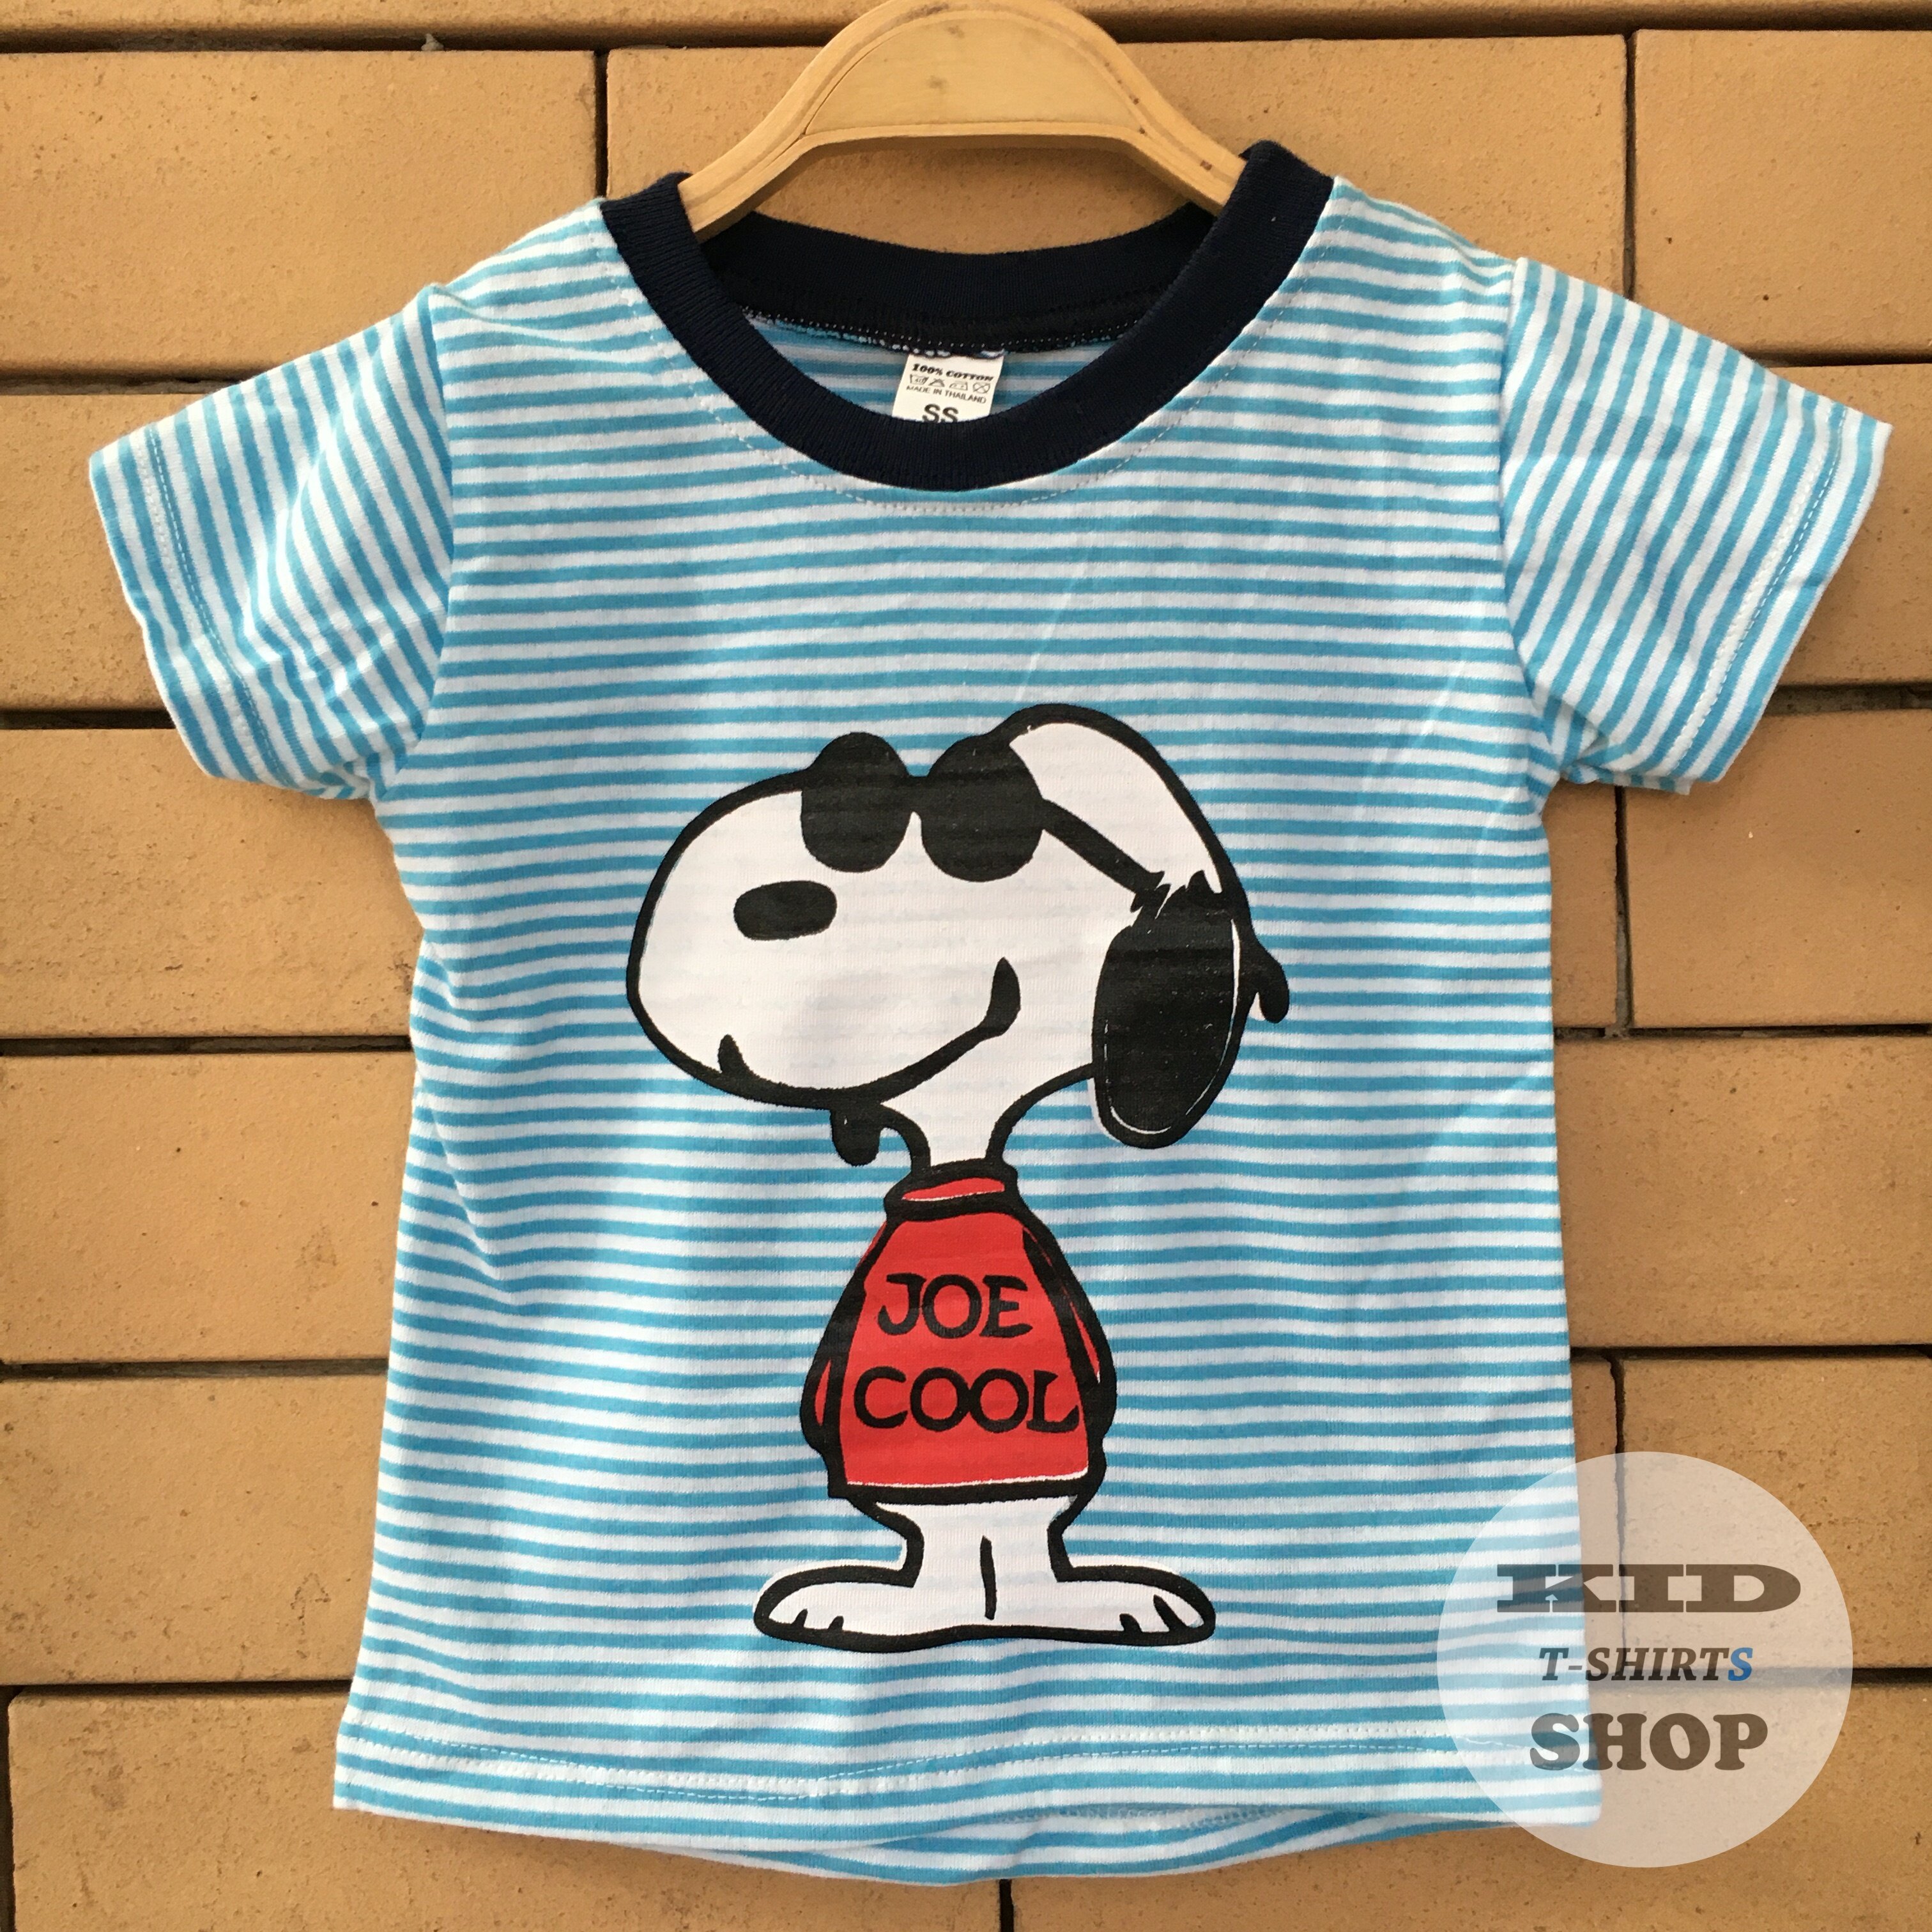 BabyOutlet เสื้อยืดเด็ก Snoopy ลายทาง เสื้อสีฟ้า/ขาว แขนสั้น มี 4 ไซส์ (SS , S , M , L) เสื้อเด็ก สนูปี้ มี Size แรกเกิด - 6 ปี ผลิตจากผ้าฝ้าย 100% ชุดเด็ก